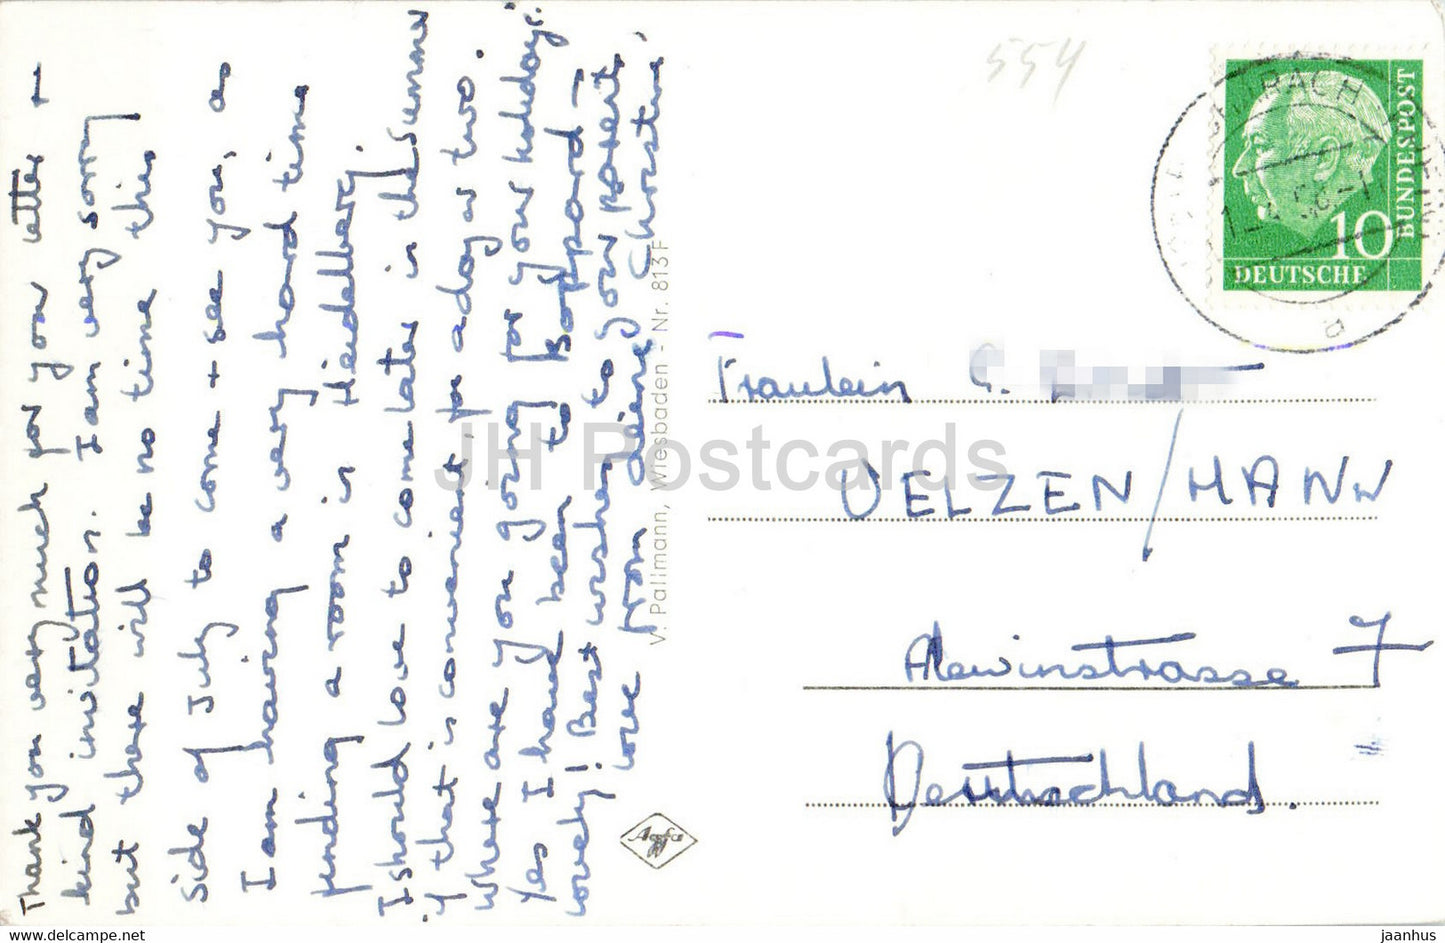 Bacharach a Rh - Jugendburg Stahleck mit Blick auf den Rhein - alte Postkarte - 1958 - Deutschland - gebraucht